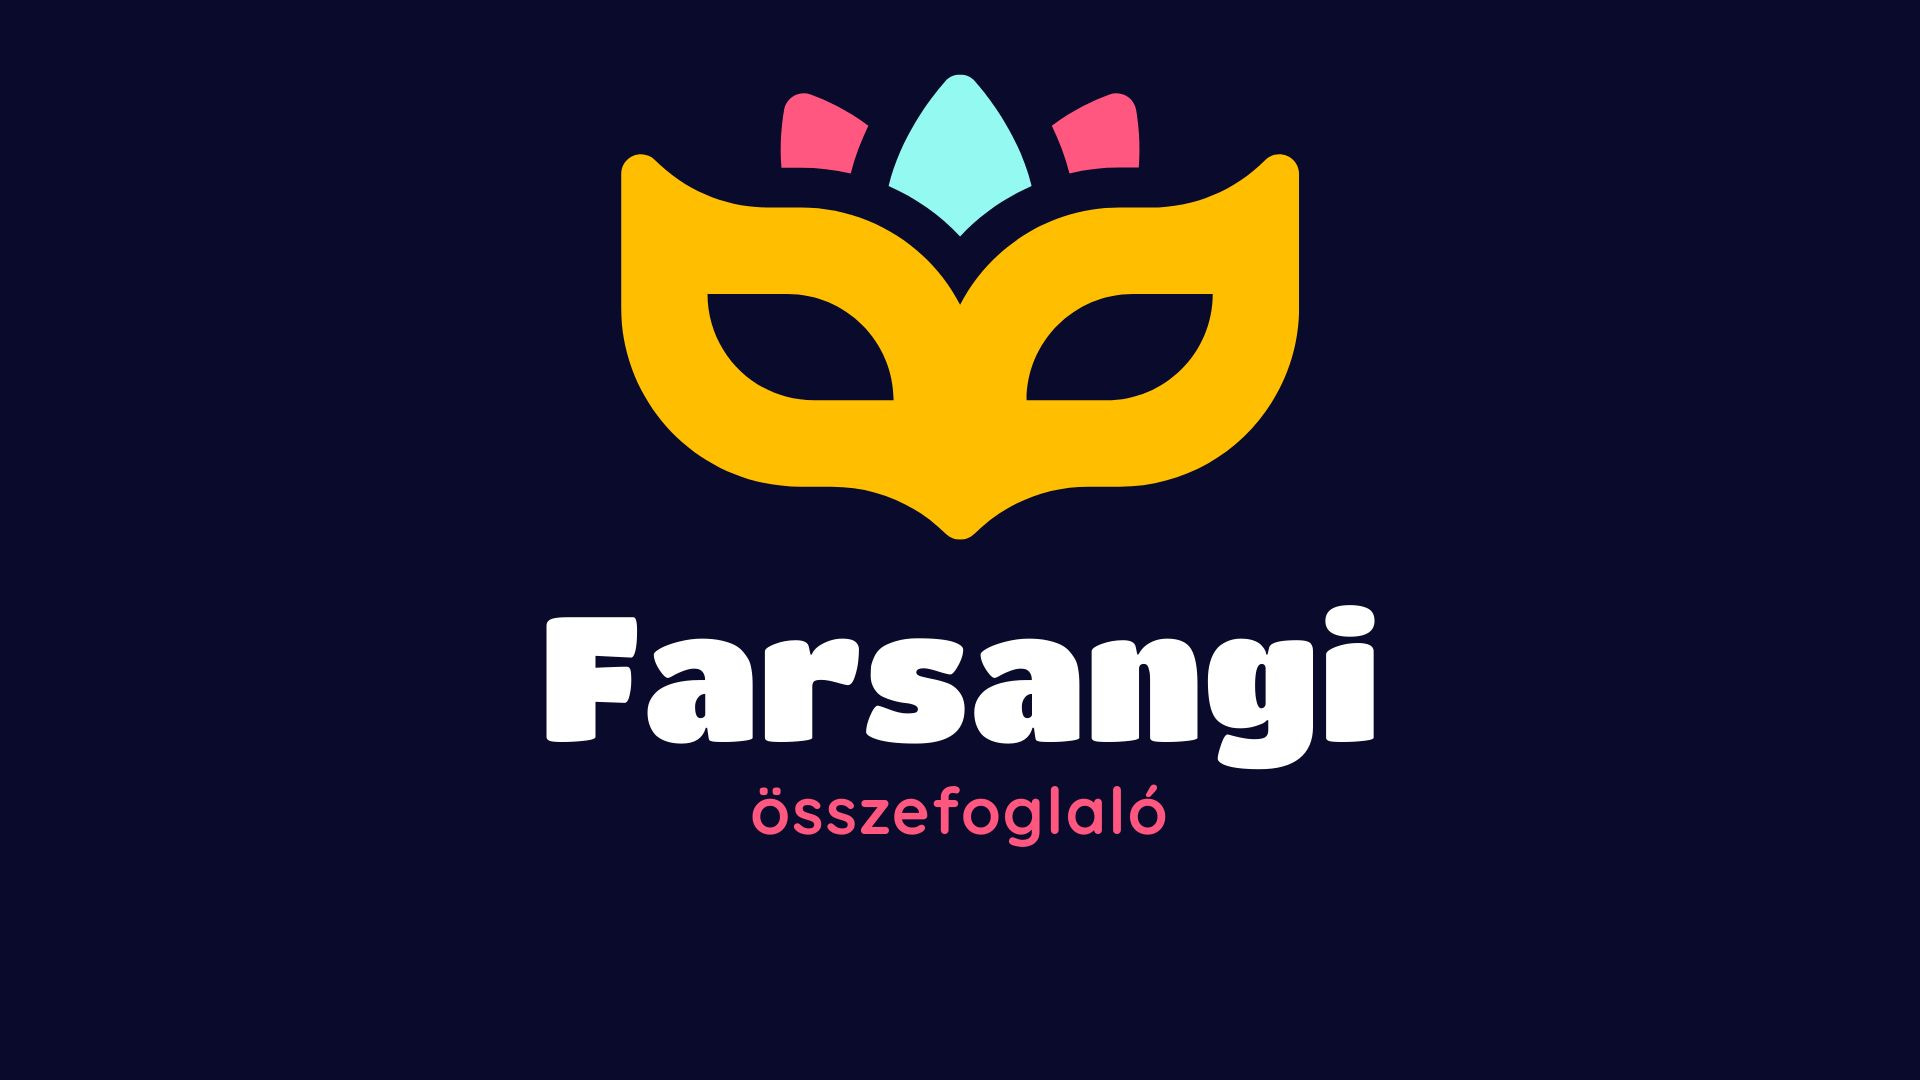 Farsangi összefoglaló